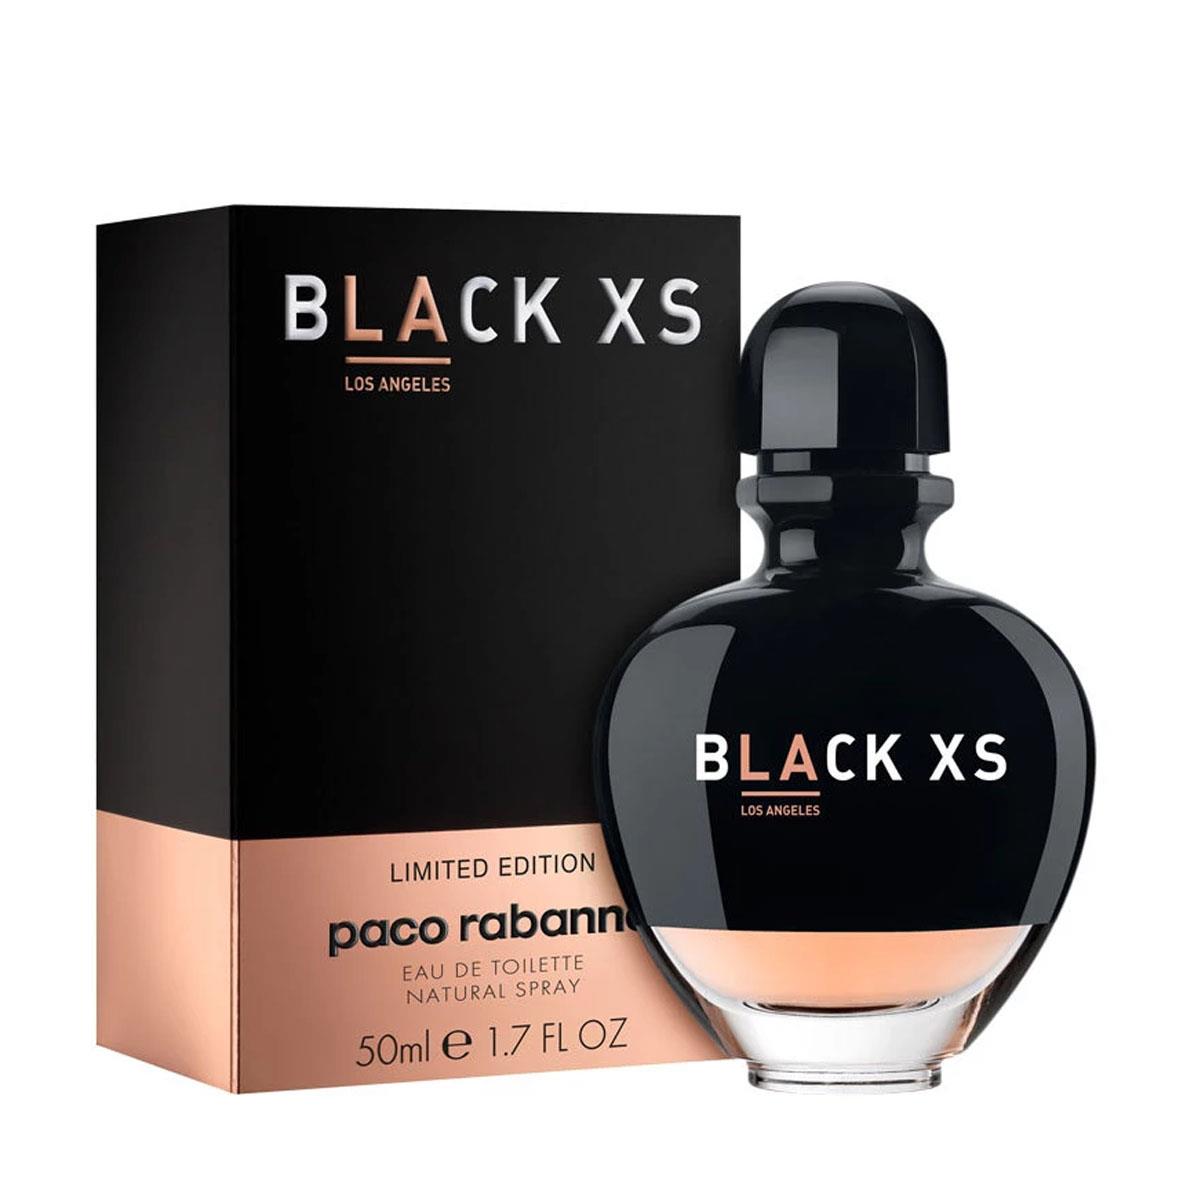 Perfume Paco Rabanne Black XS Los Angeles for Her Eau de Toilette